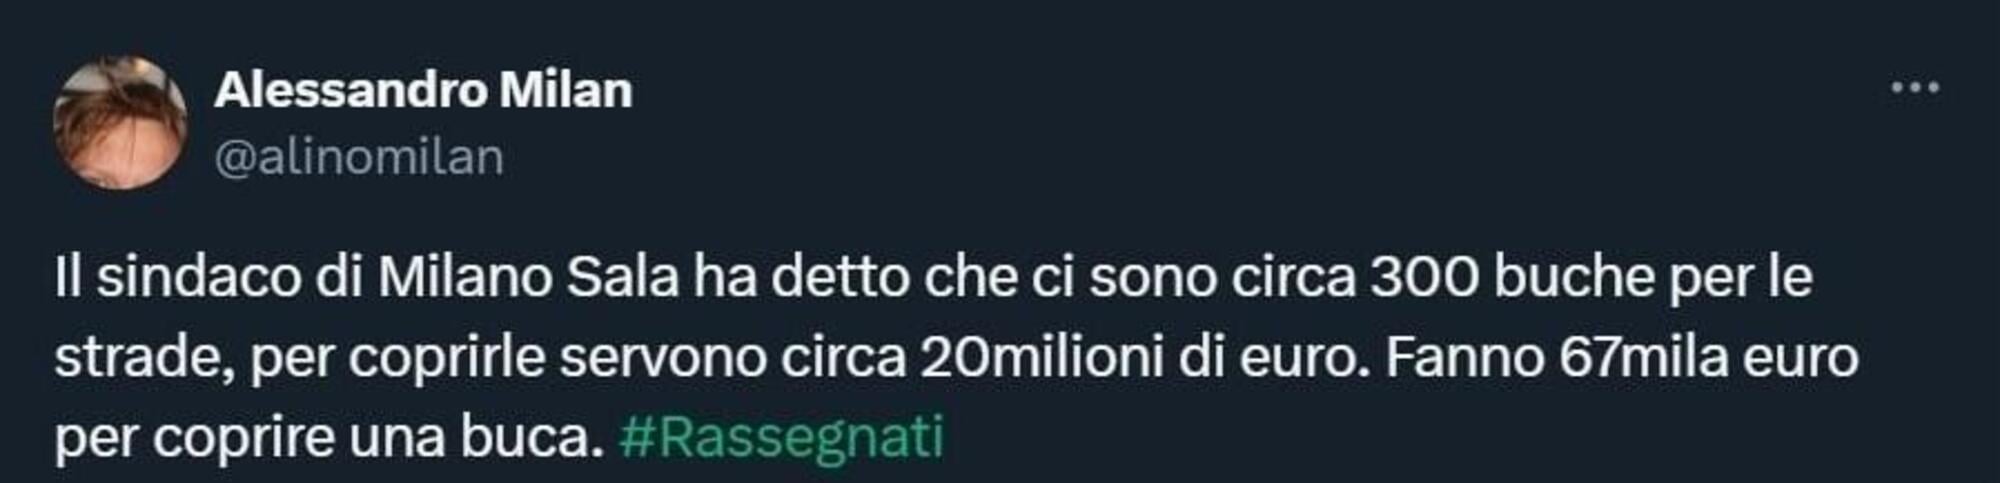 Il tweet di Alessandro Milan